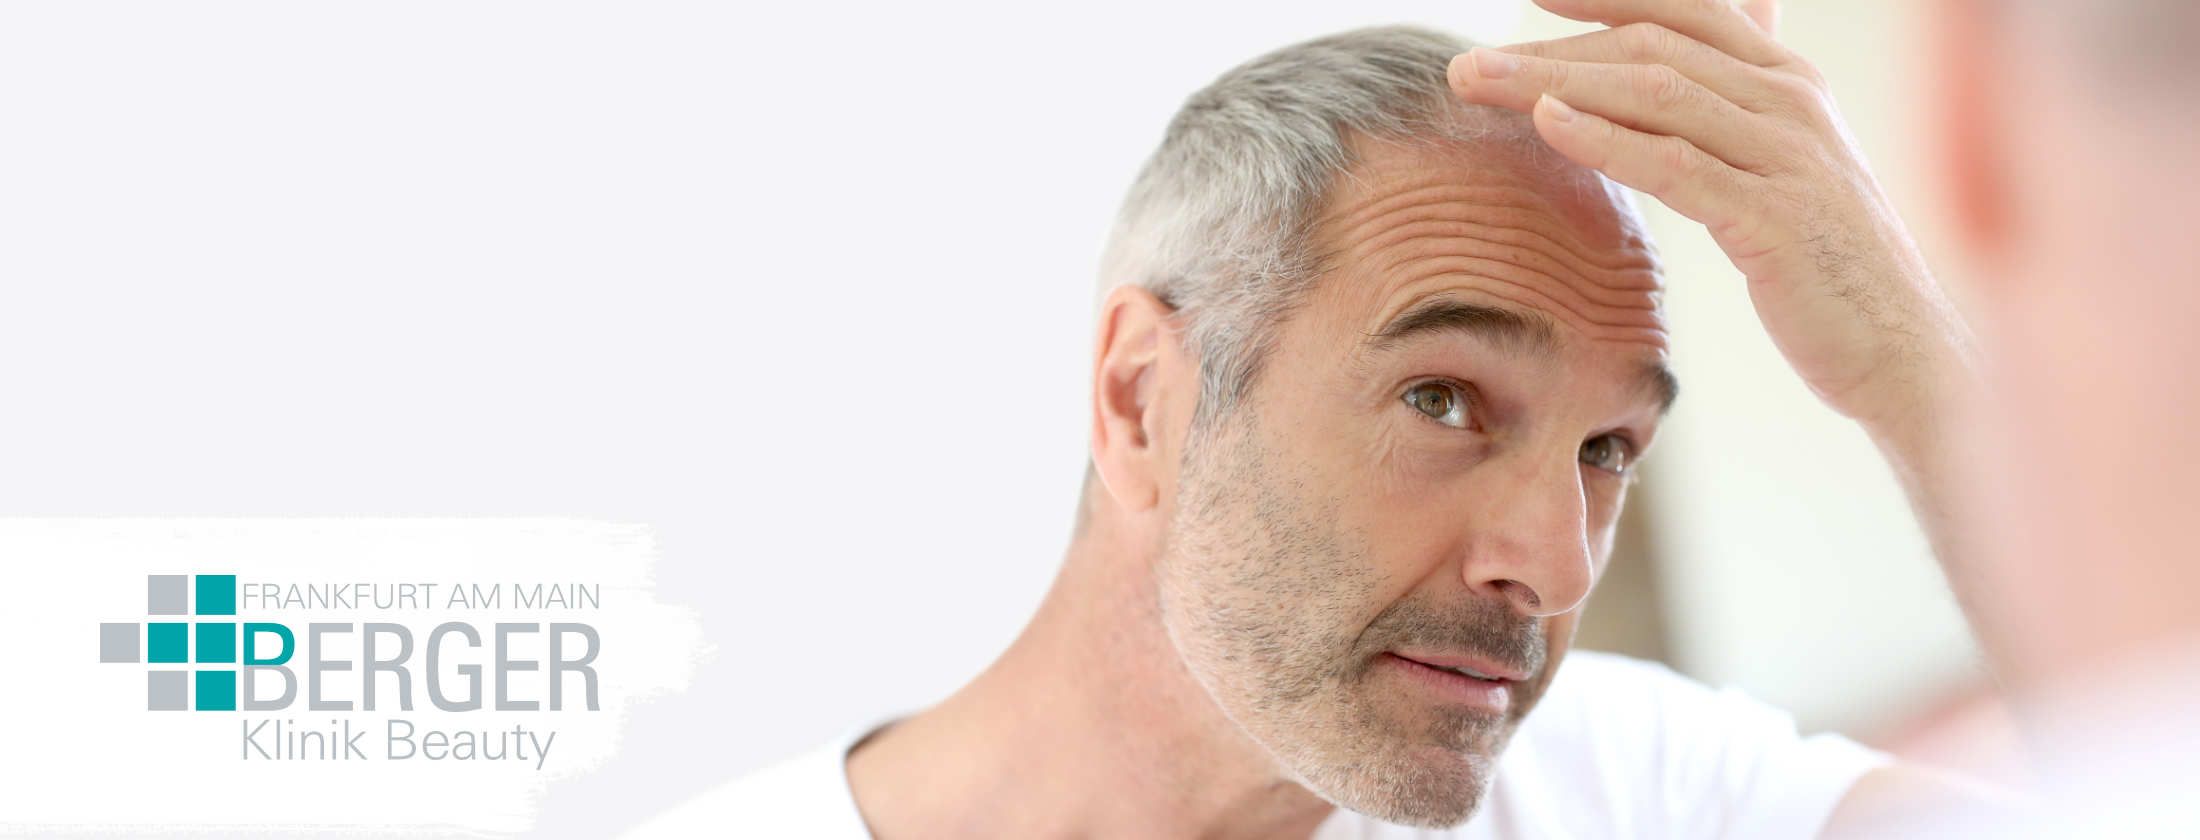 Grauhaariger Mann begutachtet sein rares Kopfhaar im Spiegel und denkt über eine kosmetische Behandlung zur Förderung von Haarwachstum. Enthaarung durch eine Laser-Haarentfernung kommt für ihn nicht in Frage. Er ist in ein weißes Shirt gekleidet.